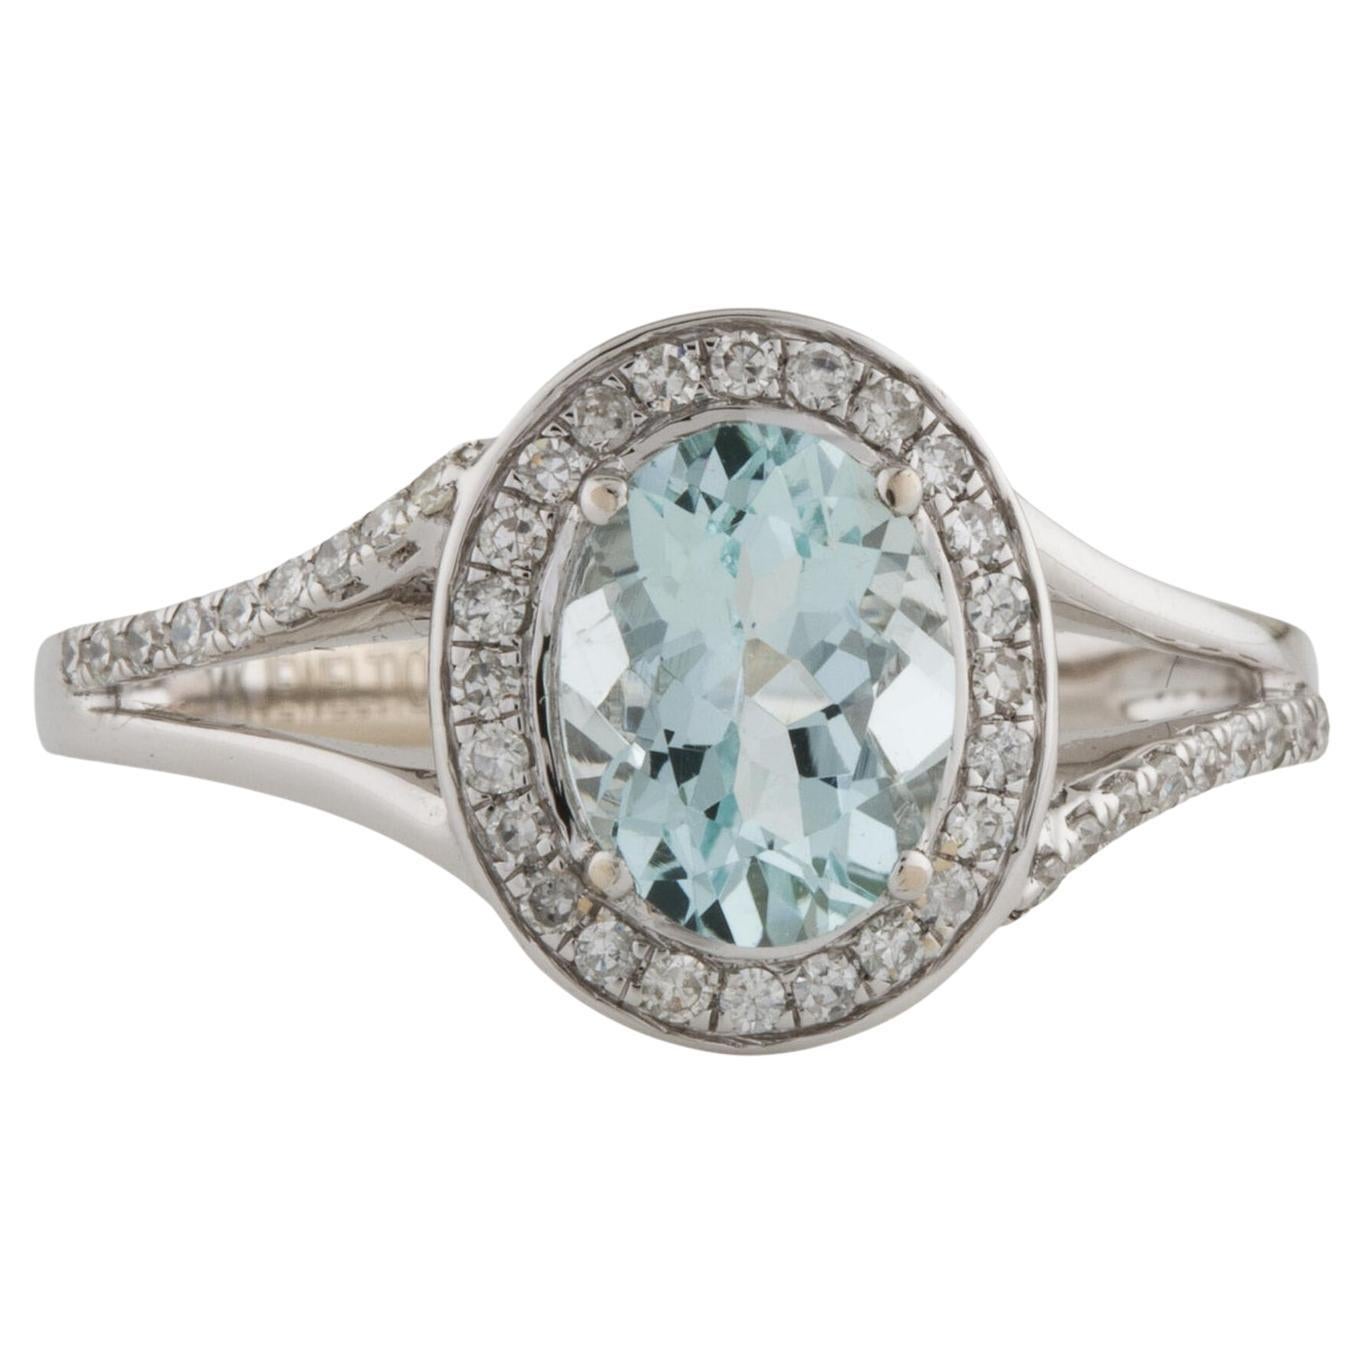 Exquisite 14K Diamond & Aquamarine Cocktail Ring, Size 7 - Timeless & Elegant